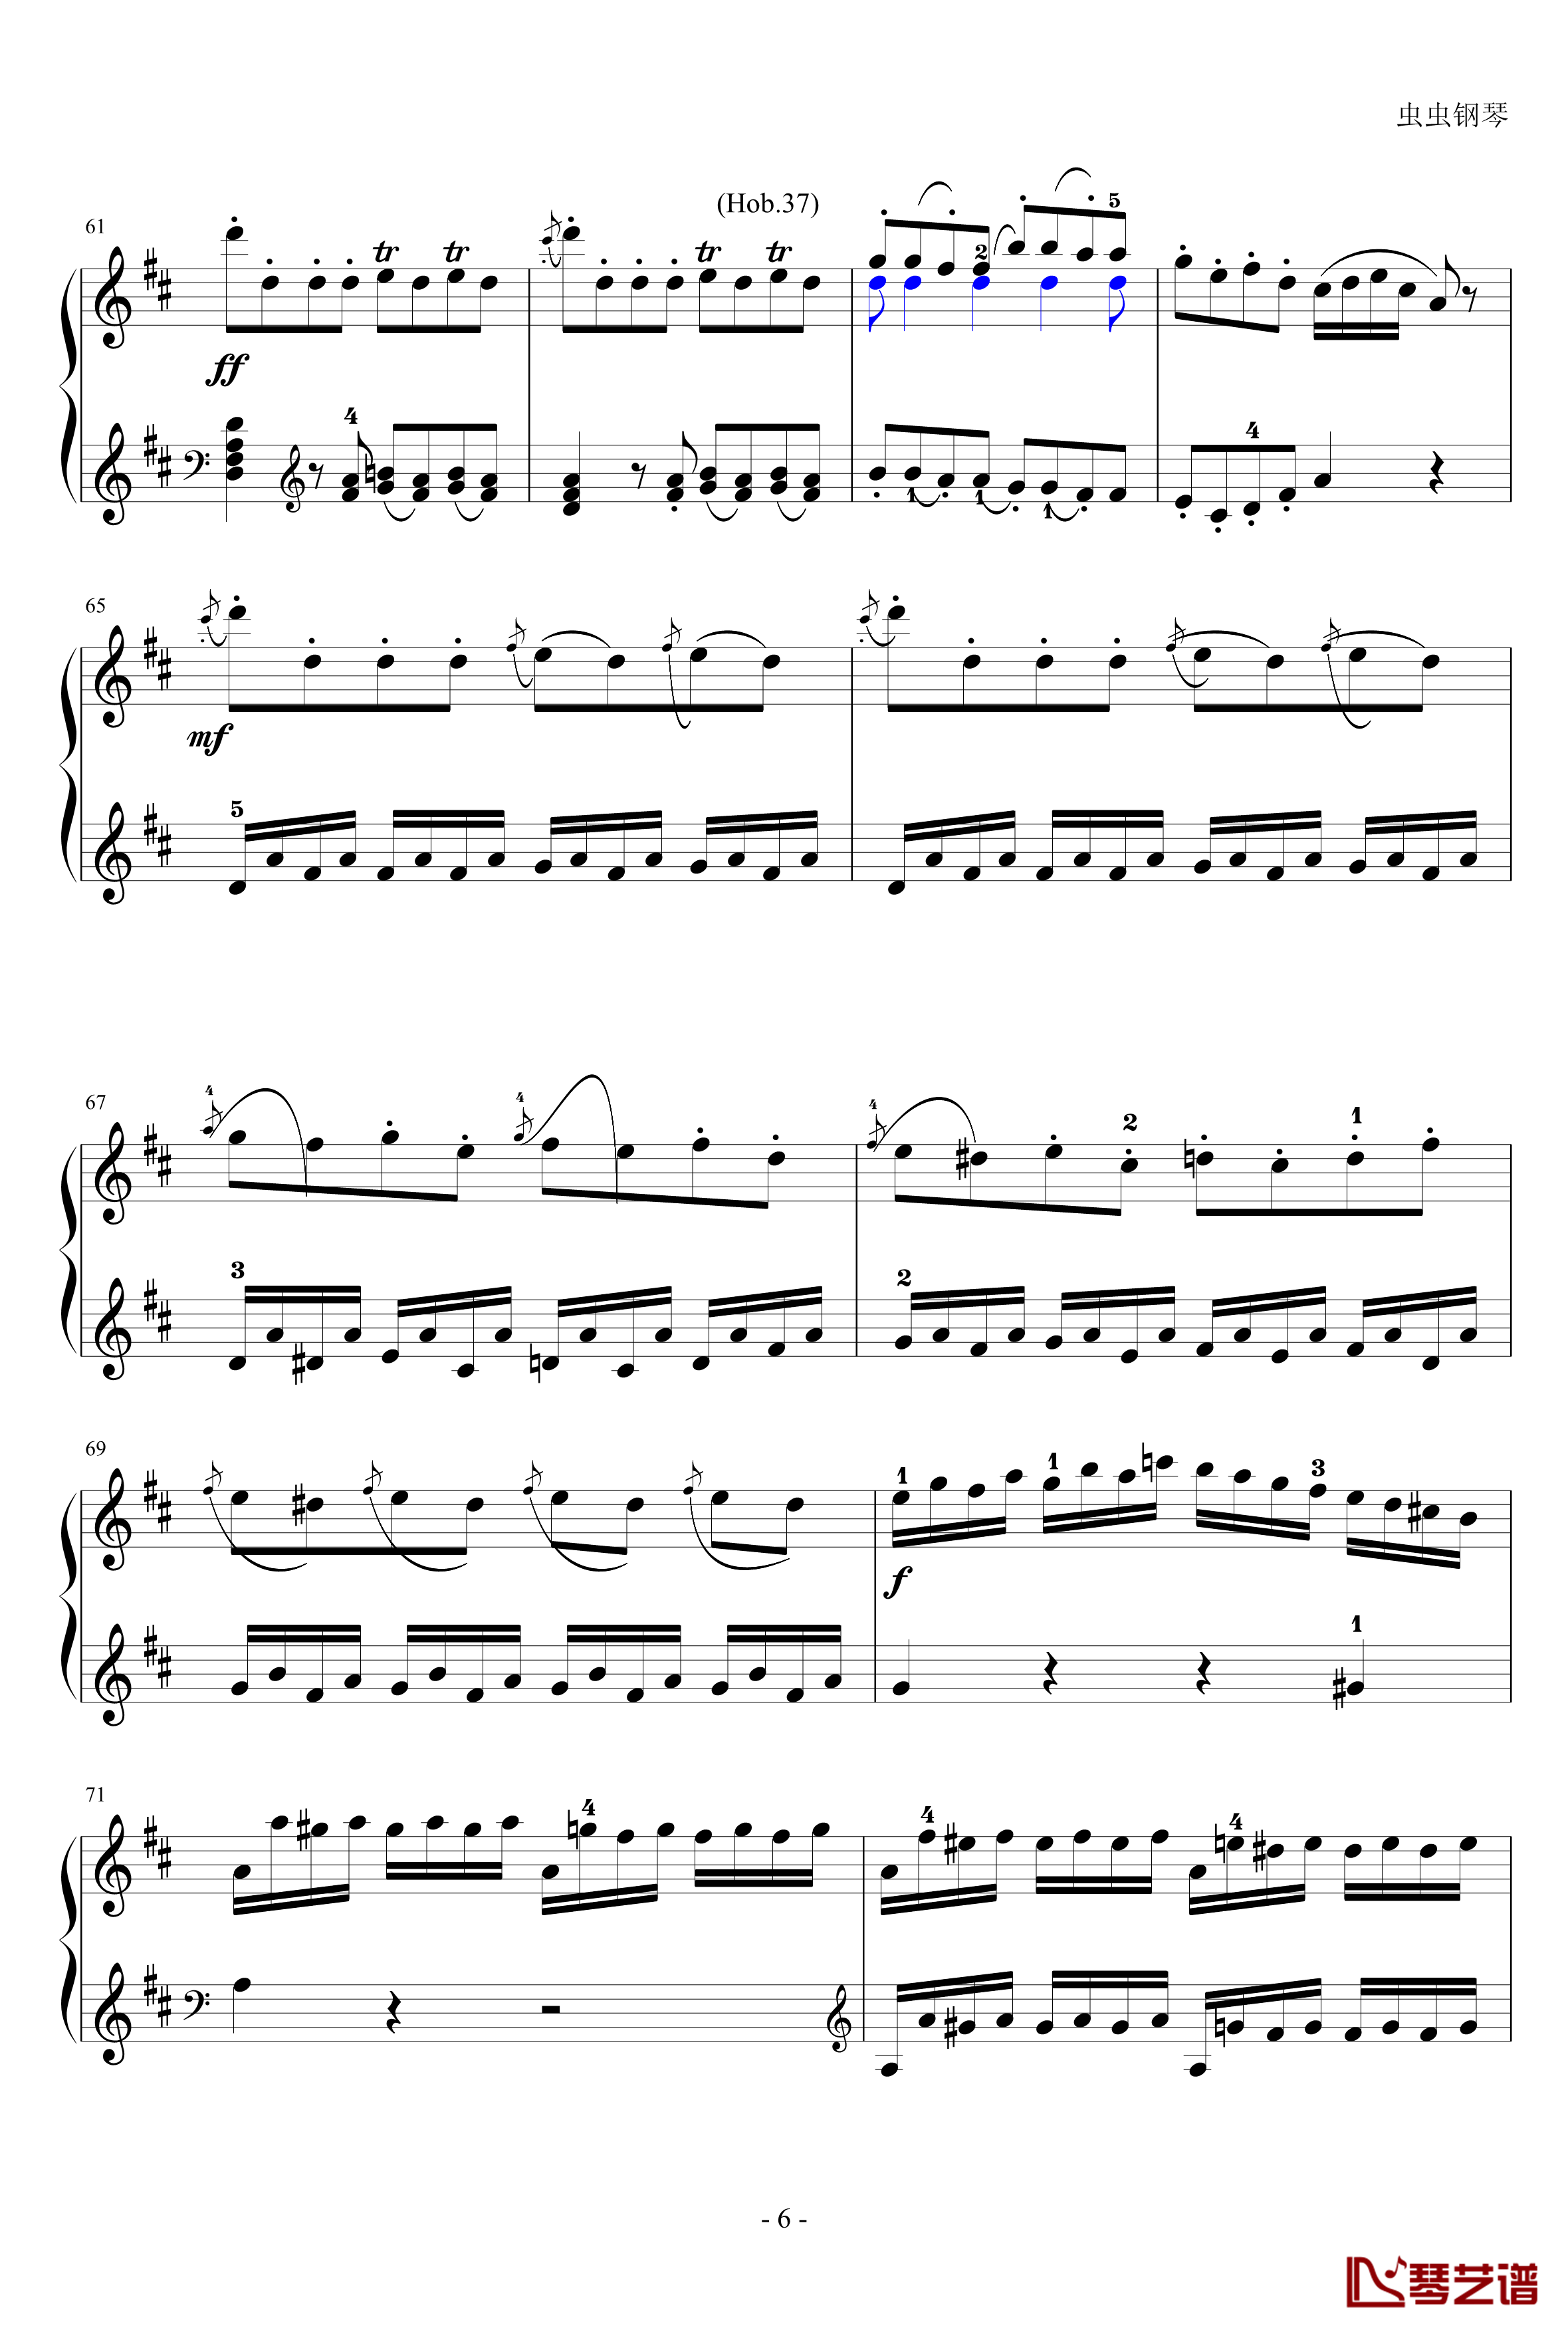 D大调奏鸣曲钢琴谱-海顿6